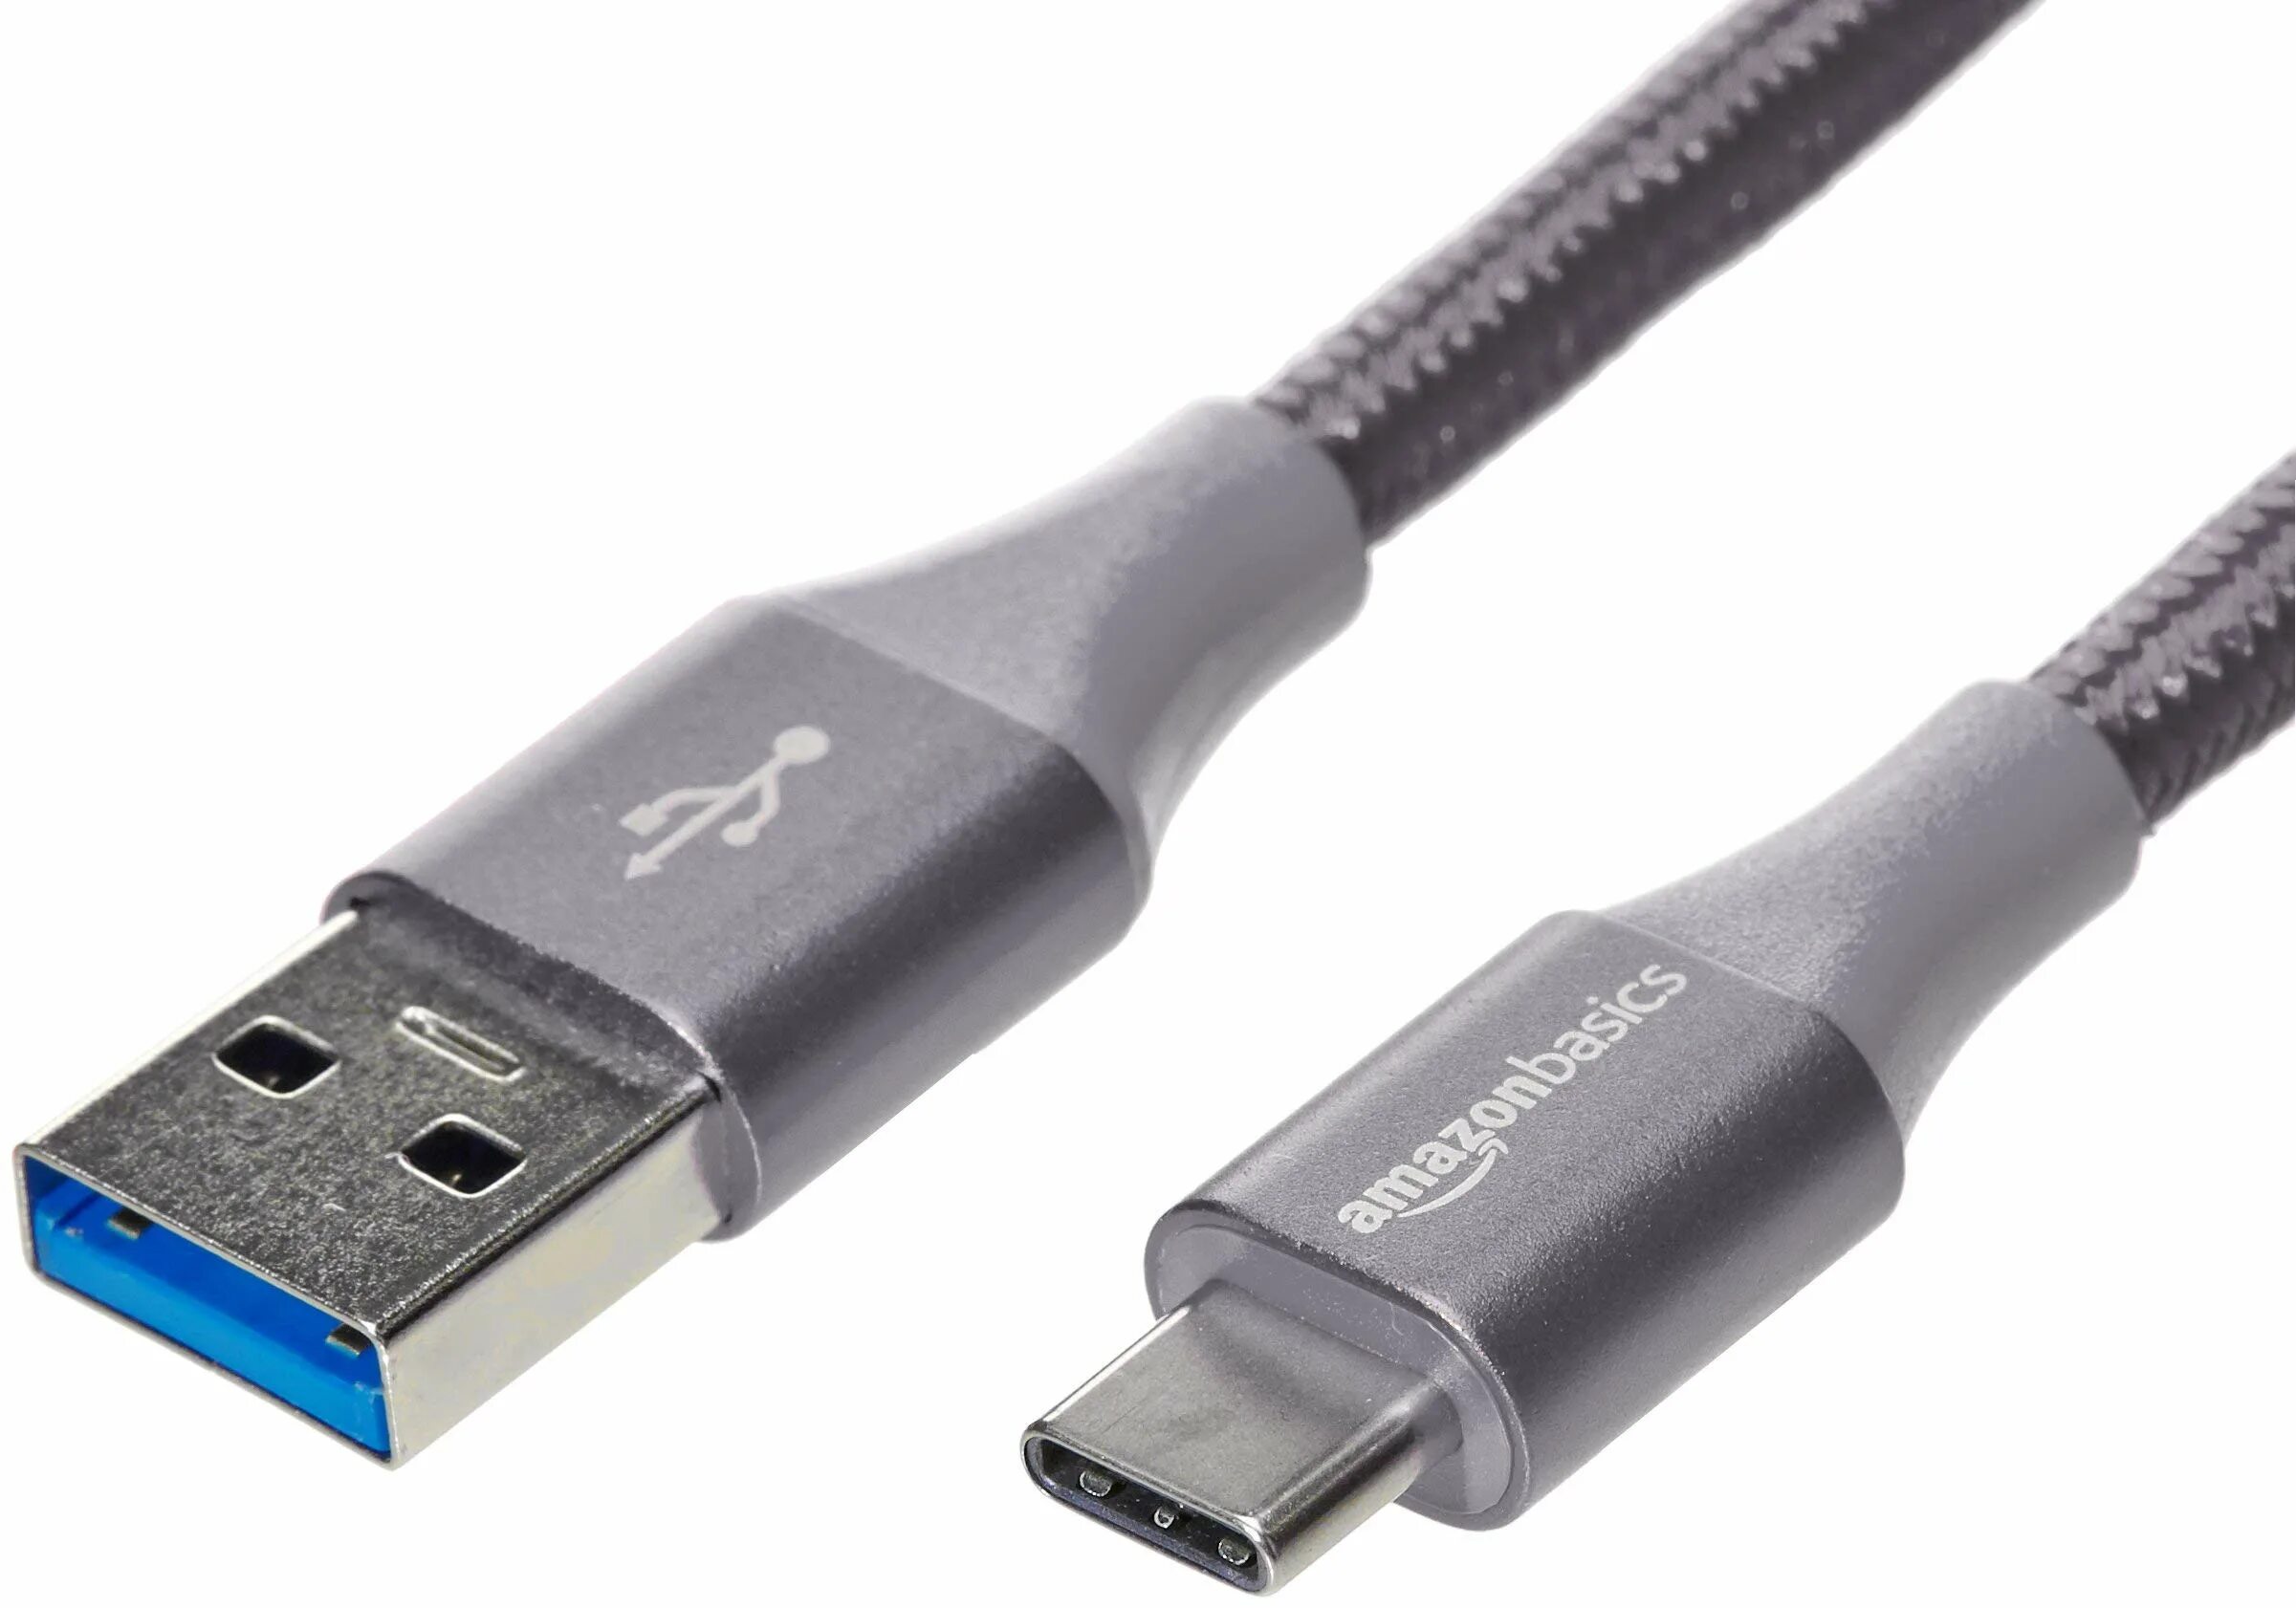 Usb c gen1. Type c Type c кабель 3a. Кабель USB 3.1 Gen 2. Type-c USB 2.0. USB 4.0 Cable 6ft Type c.